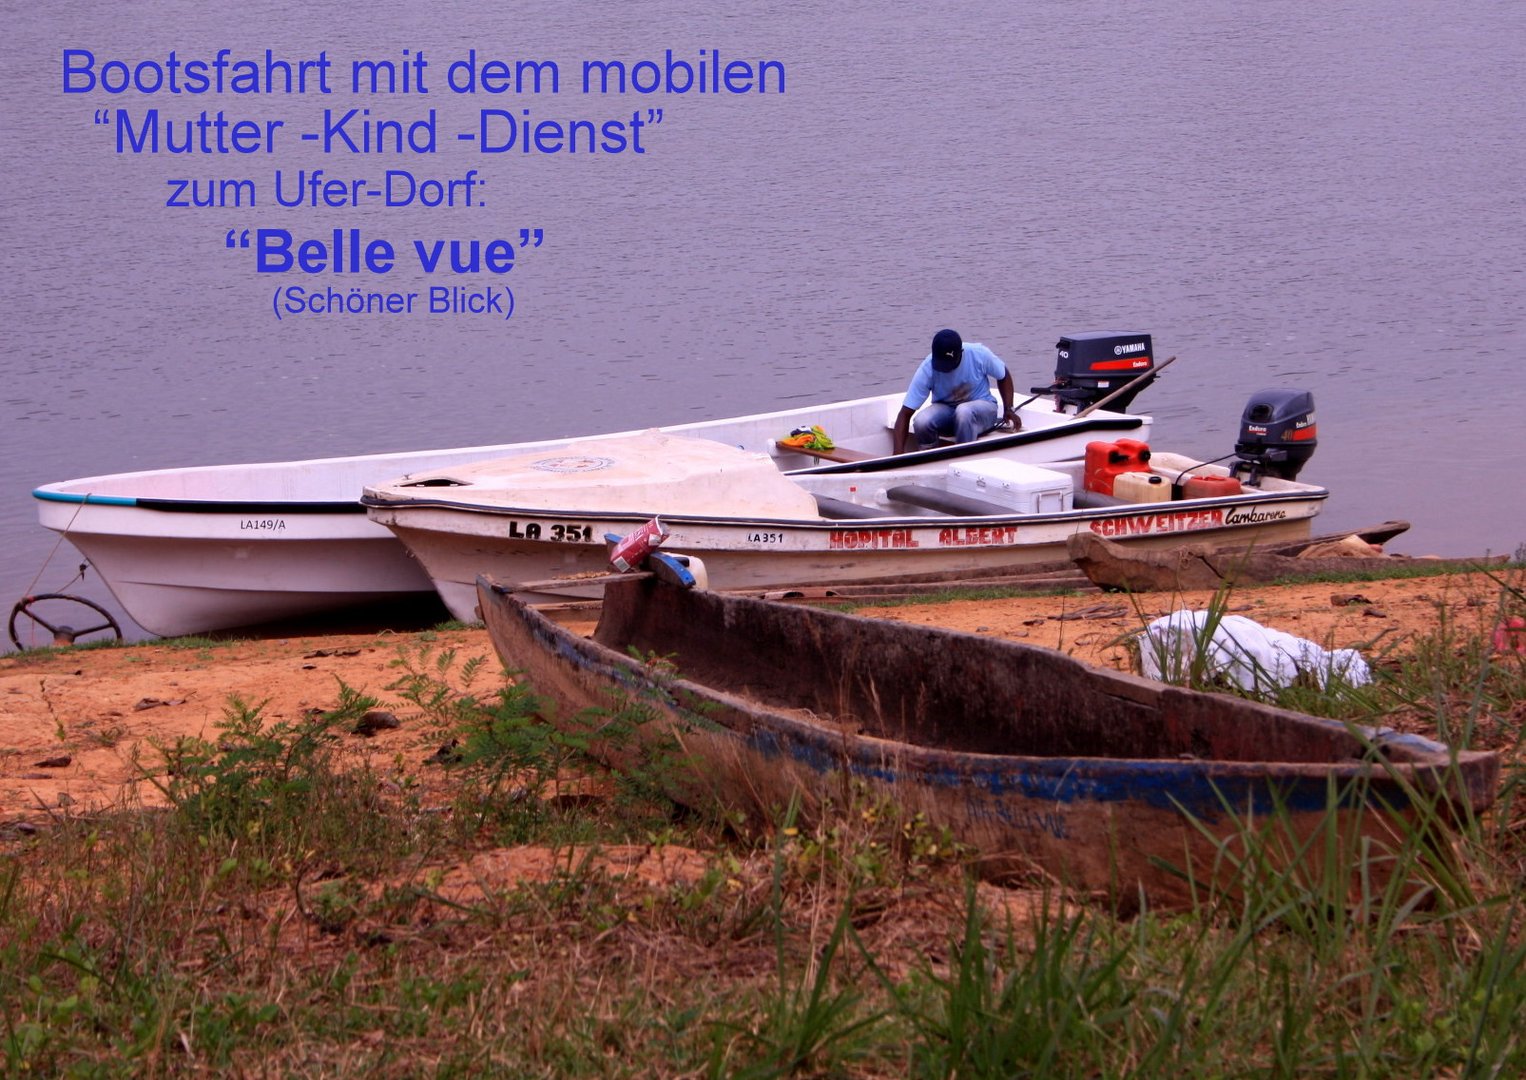 Bootsfahrt mit dem Mobilem Mutter-Kind-Dienst zum Dorf "Belle vue" (Schöner Blick)